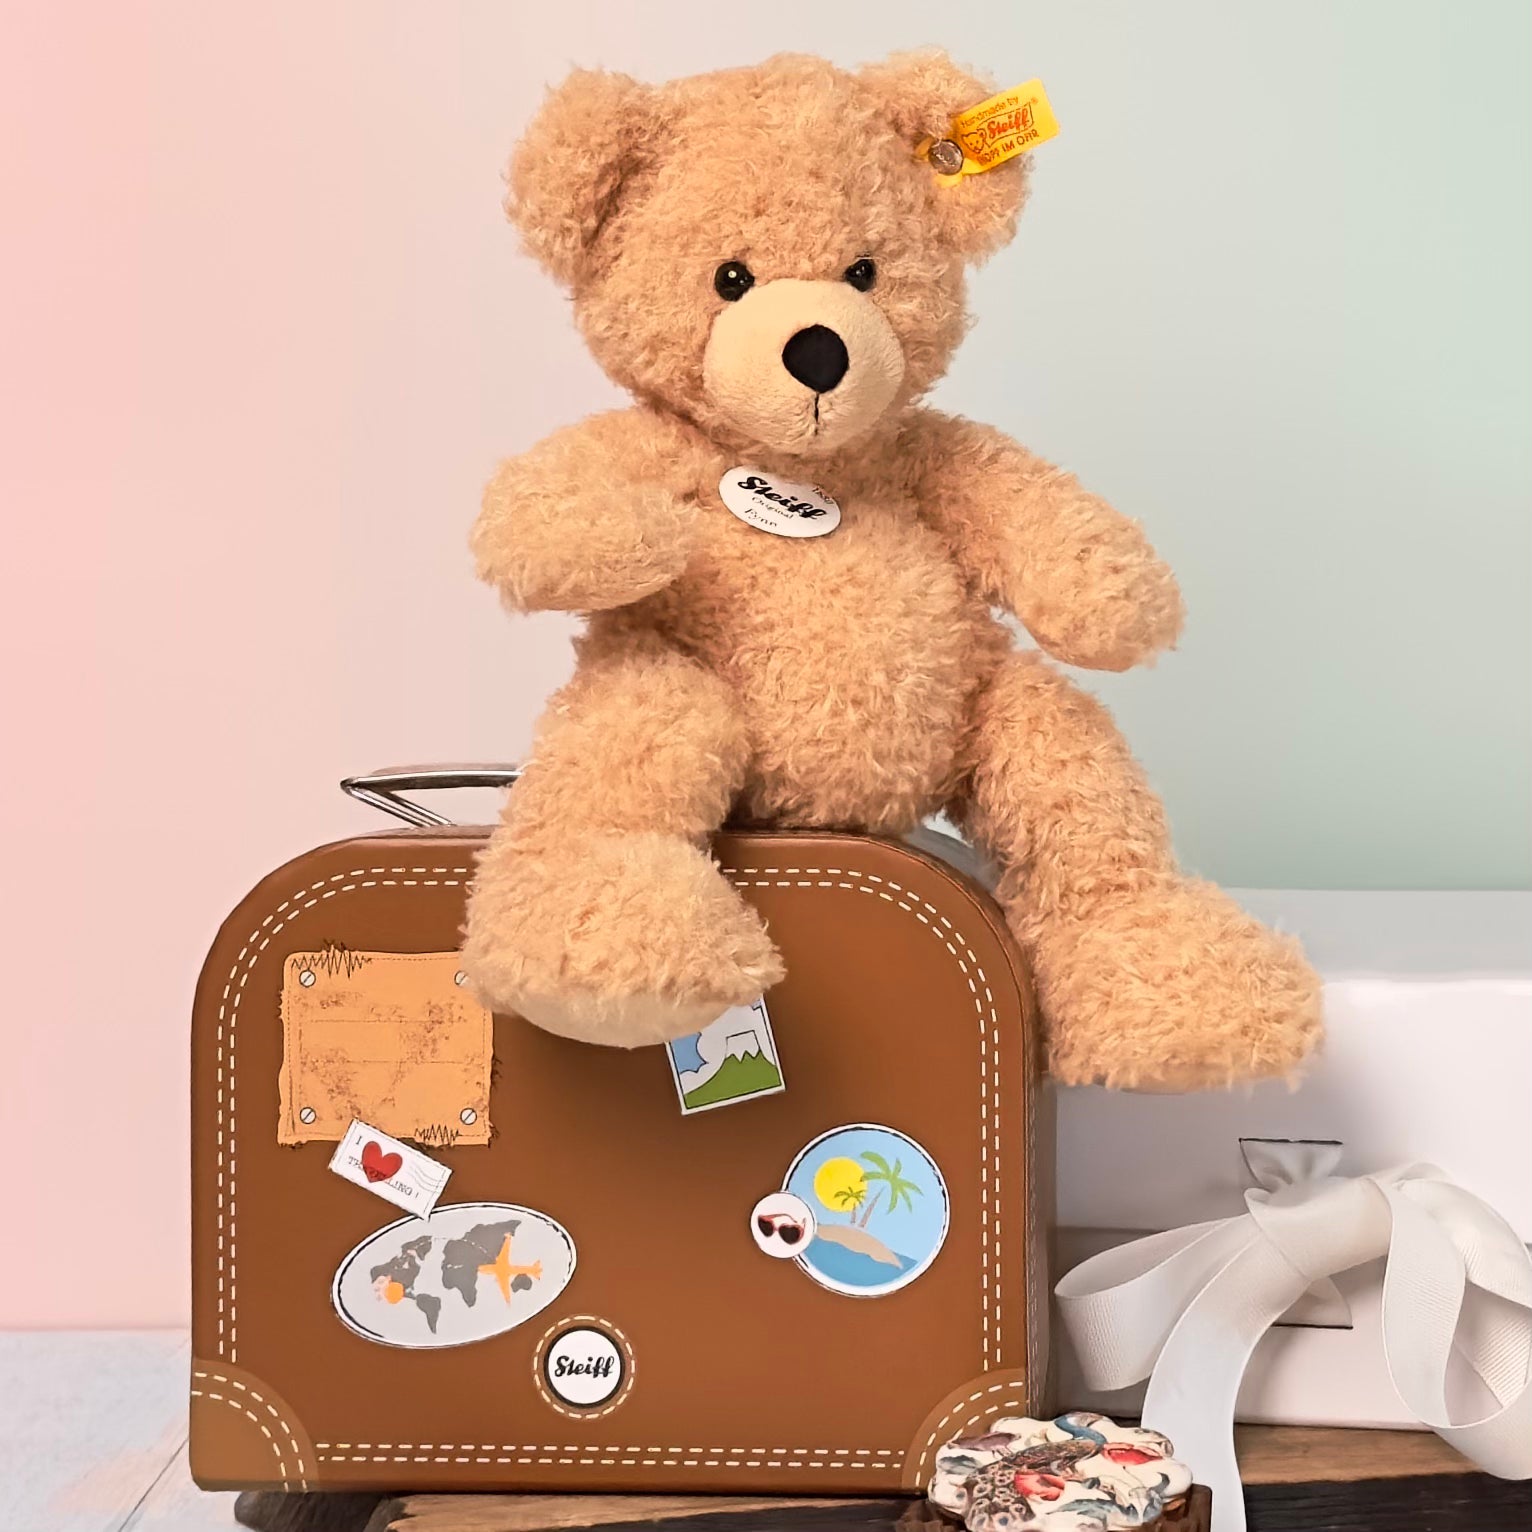 Steiff Soft Cuddly Friends Fynn Teddy bear in suitcase